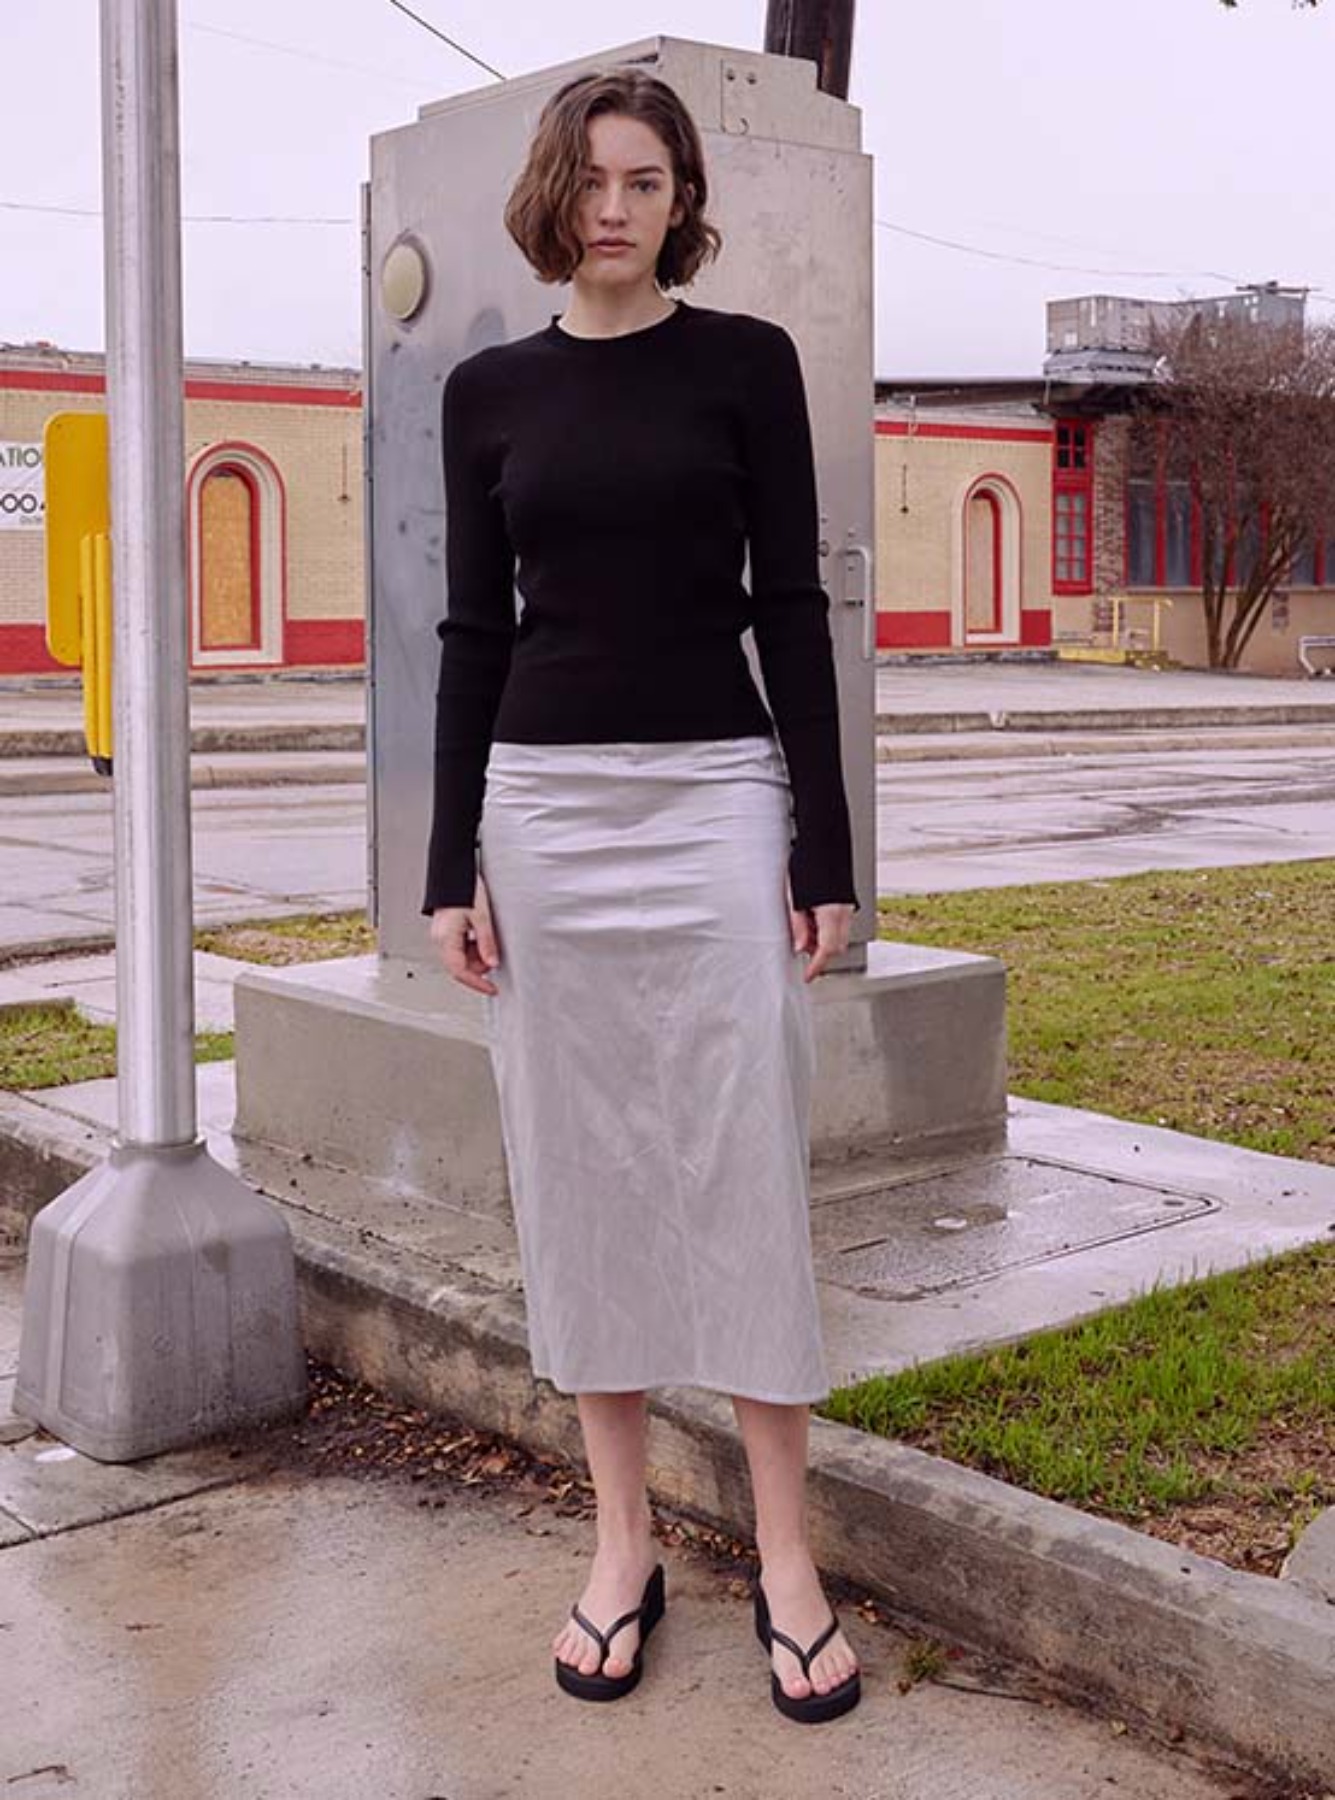 Metallic Skirt in Sliver VW3SS092-15